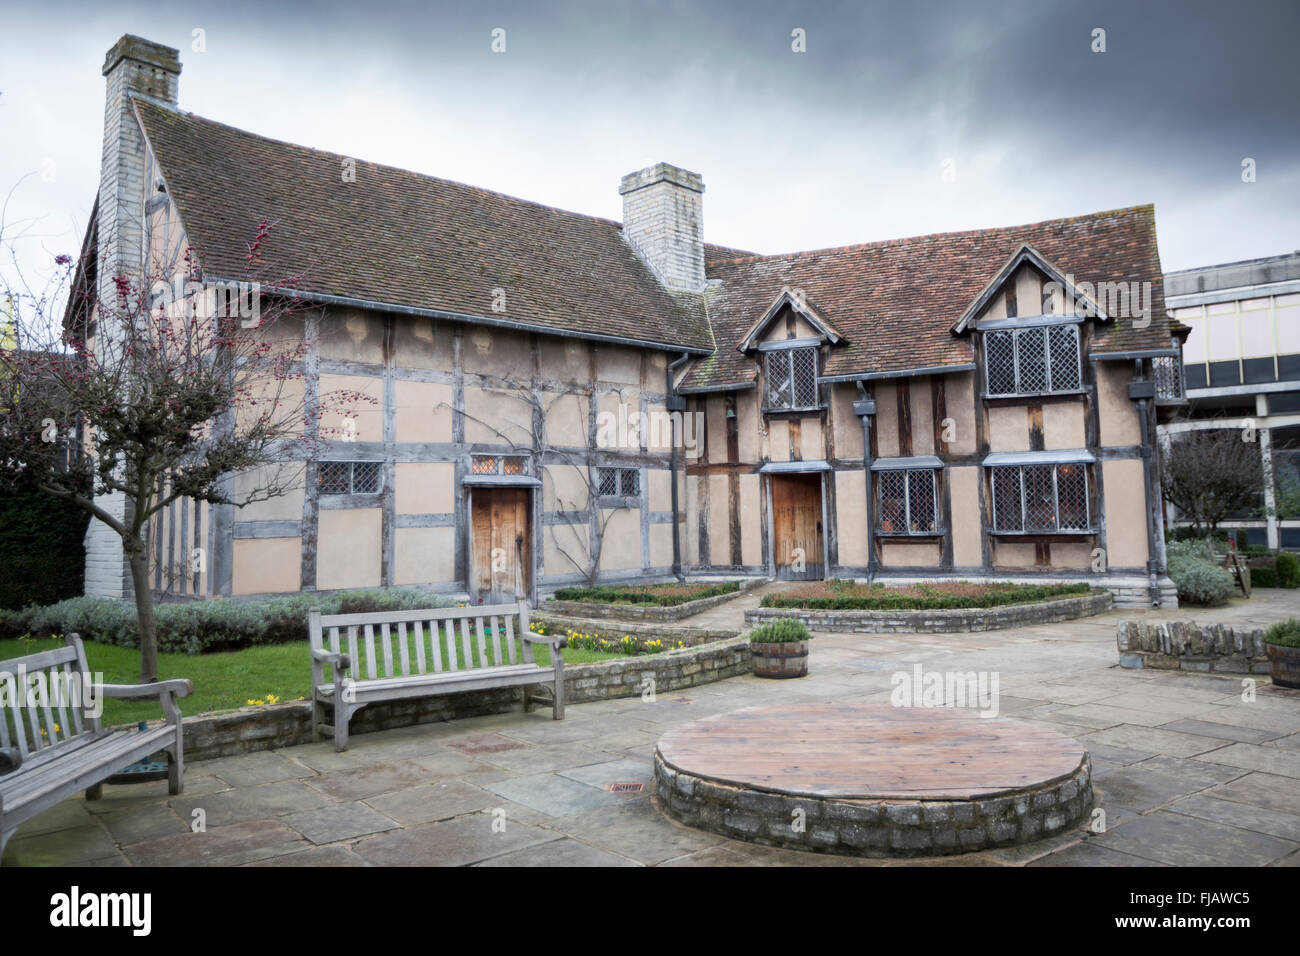 Le lieu de naissance de Shakespeare a16ème siècle maison à colombages, Henley Road, Stratford-upon-Avon, Warwickshire, UK Banque D'Images